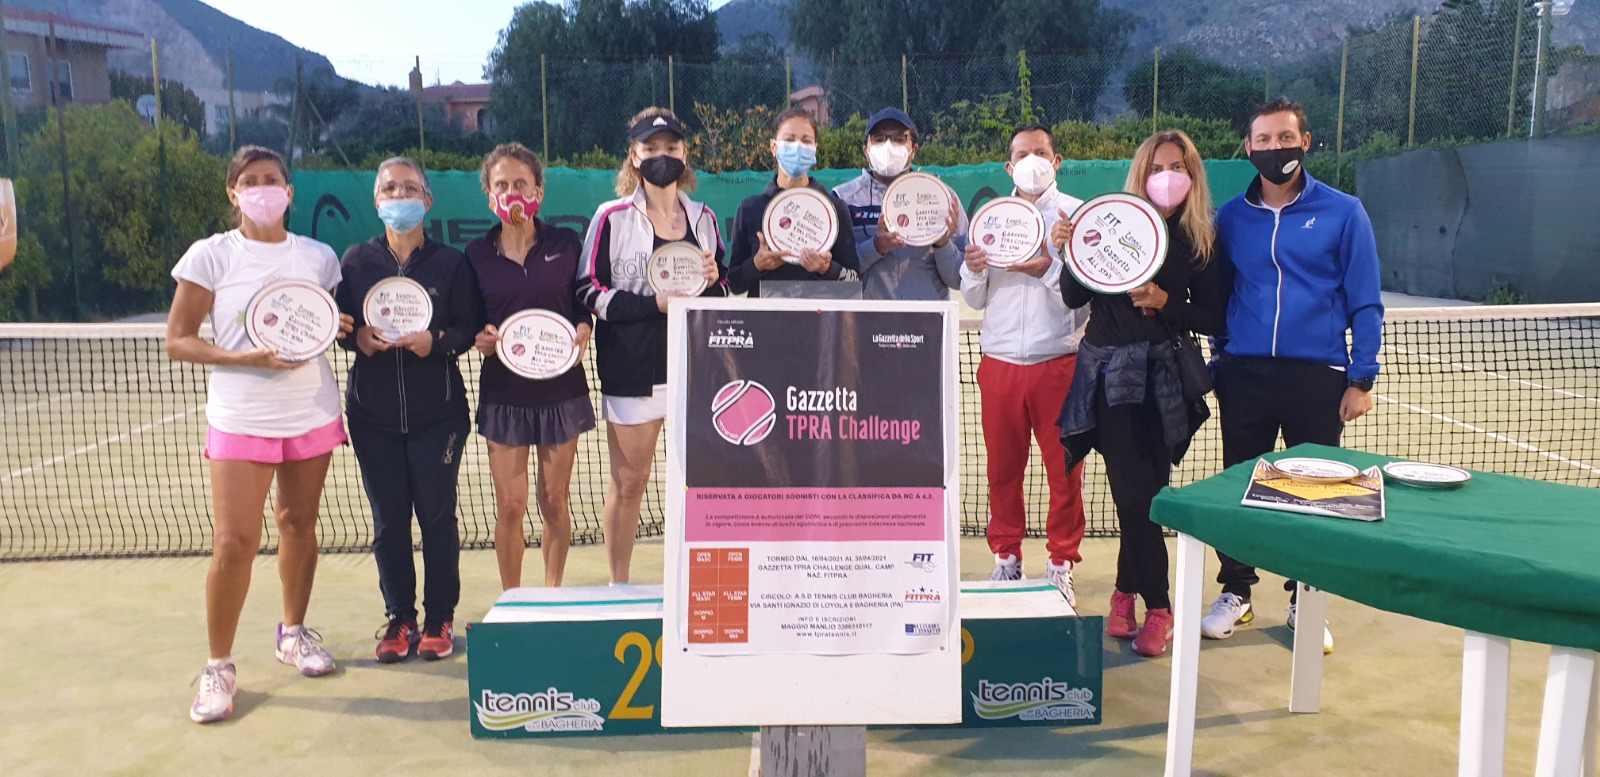 Gazzetta TPRA Challenge 2021 - Torneo di tennis organizzato da Tennis Club di Bagheria. I partecipanti sono stati premiati con dei piatti in ceramica artistica siciliana realizzati da Patrizia Di Piazza